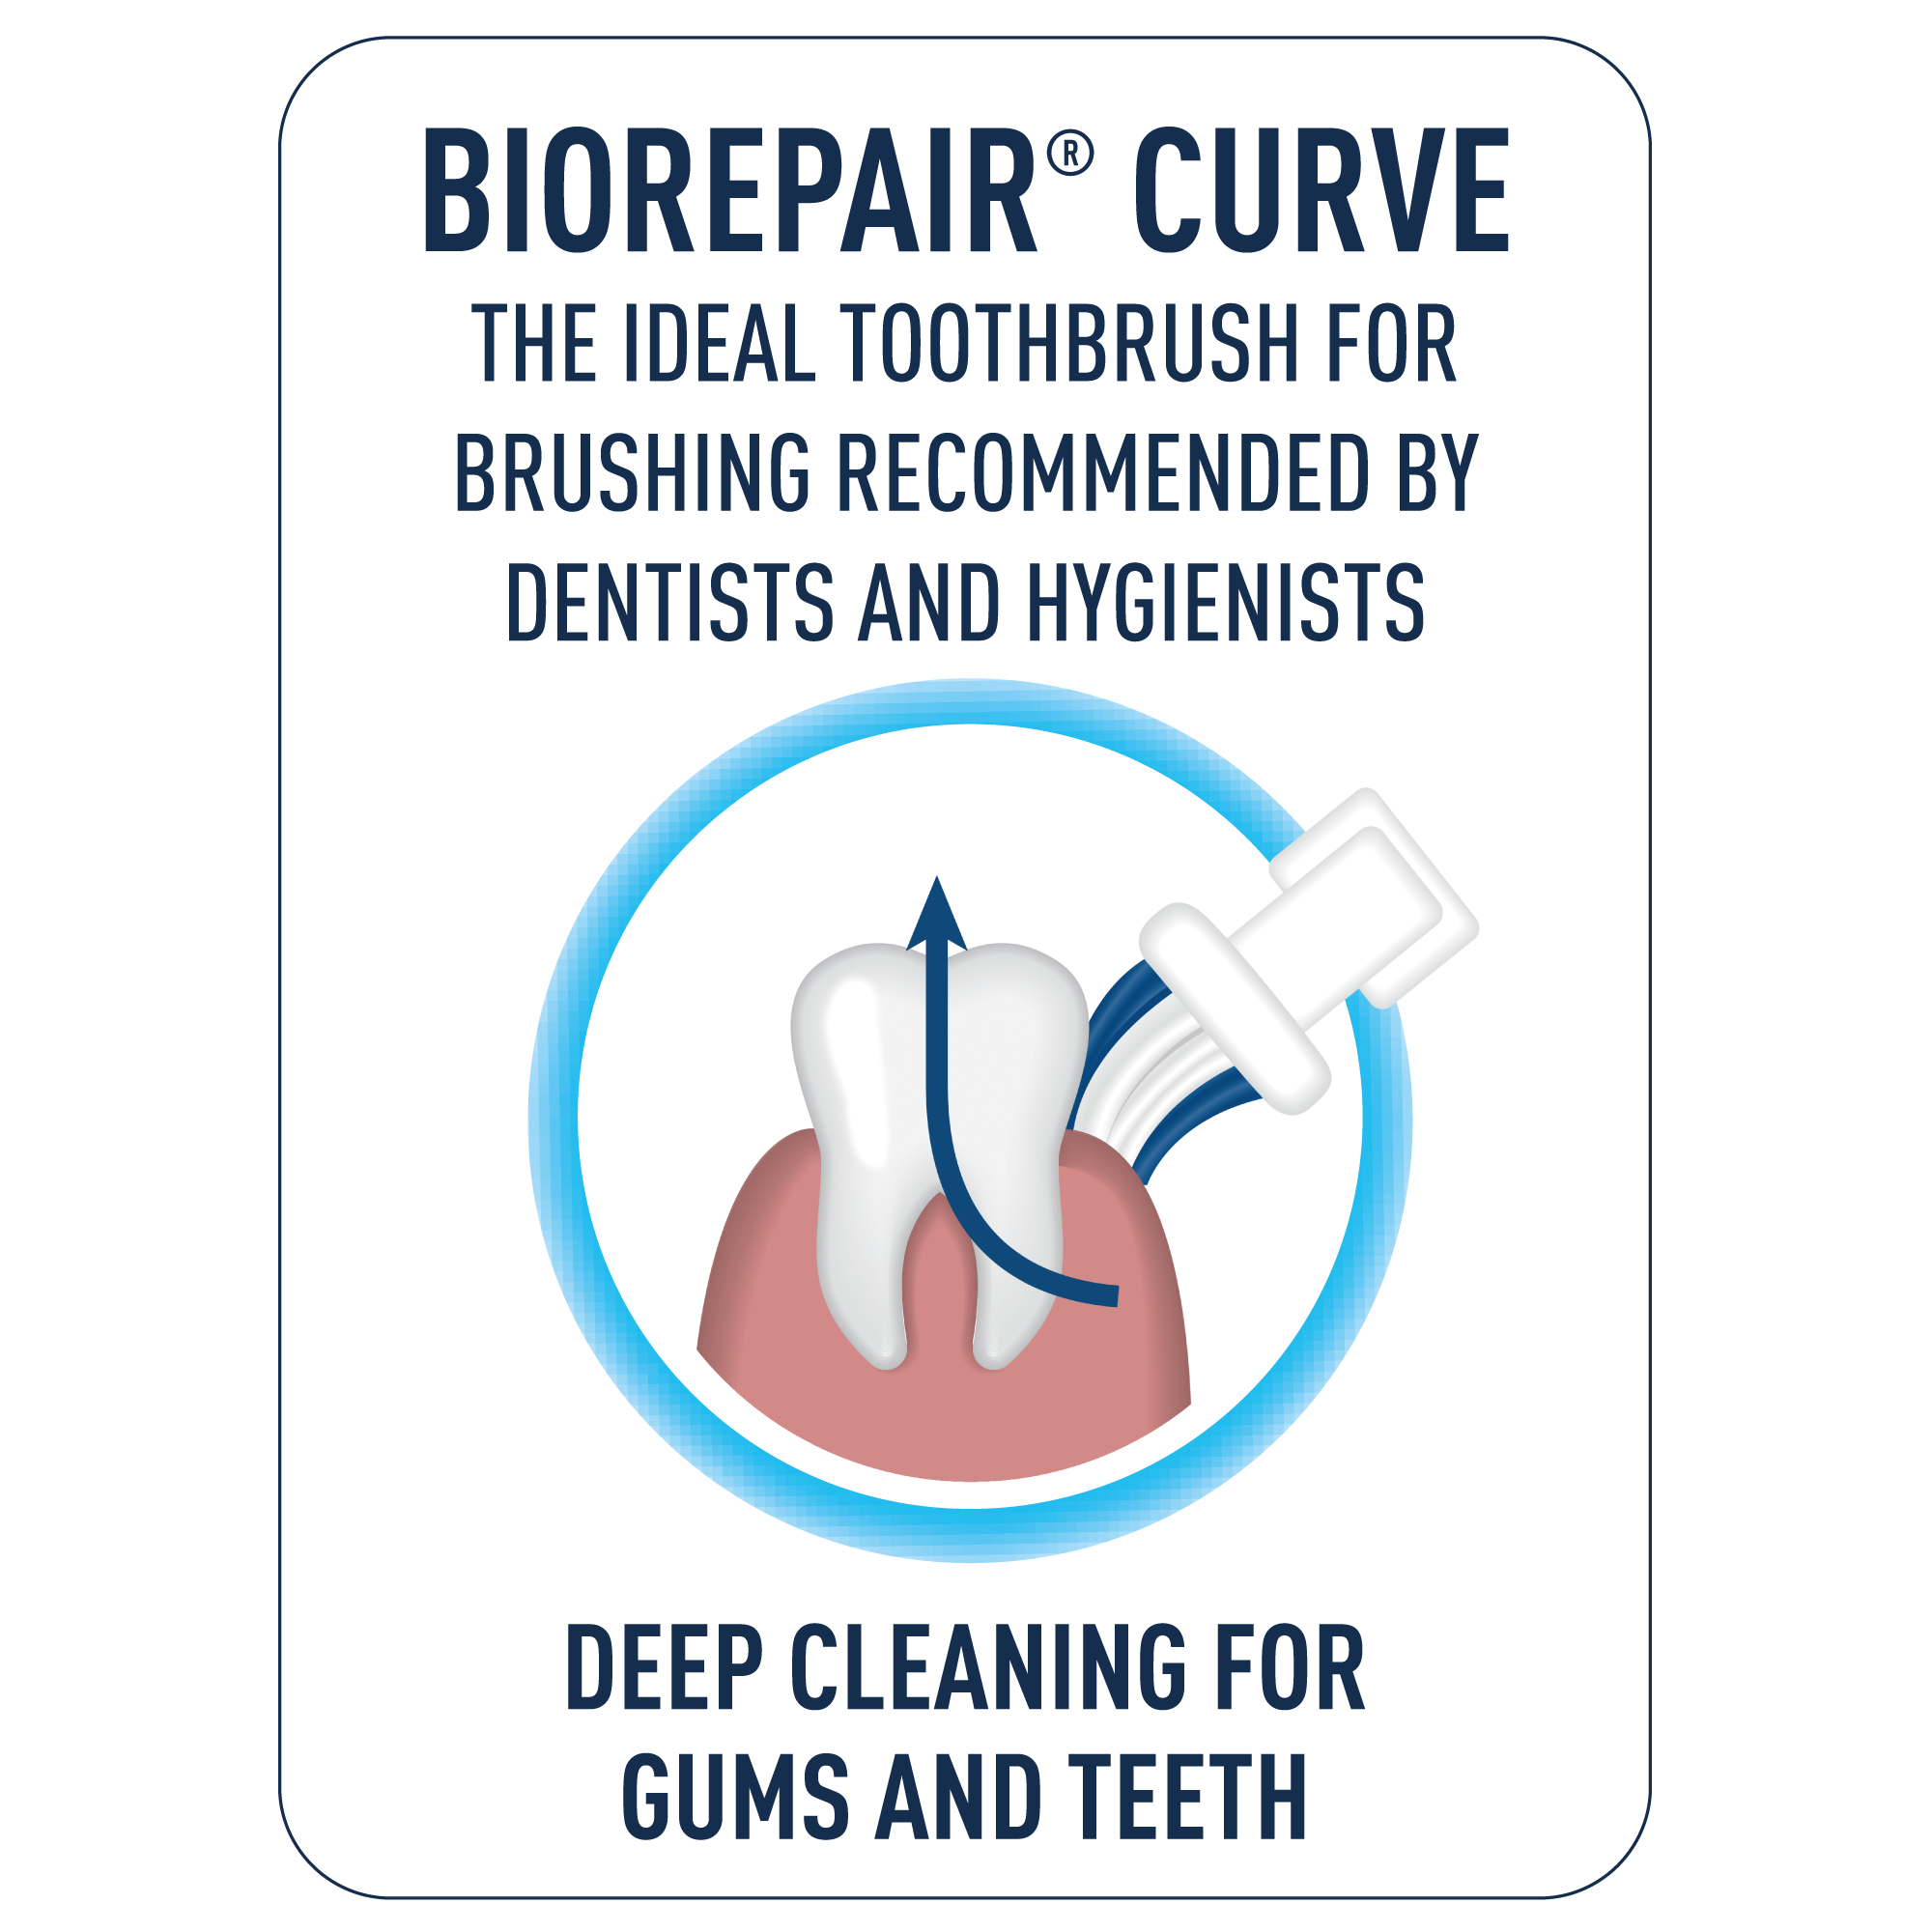 Biorepair CURVE per la pulizia profonda di denti e gengive